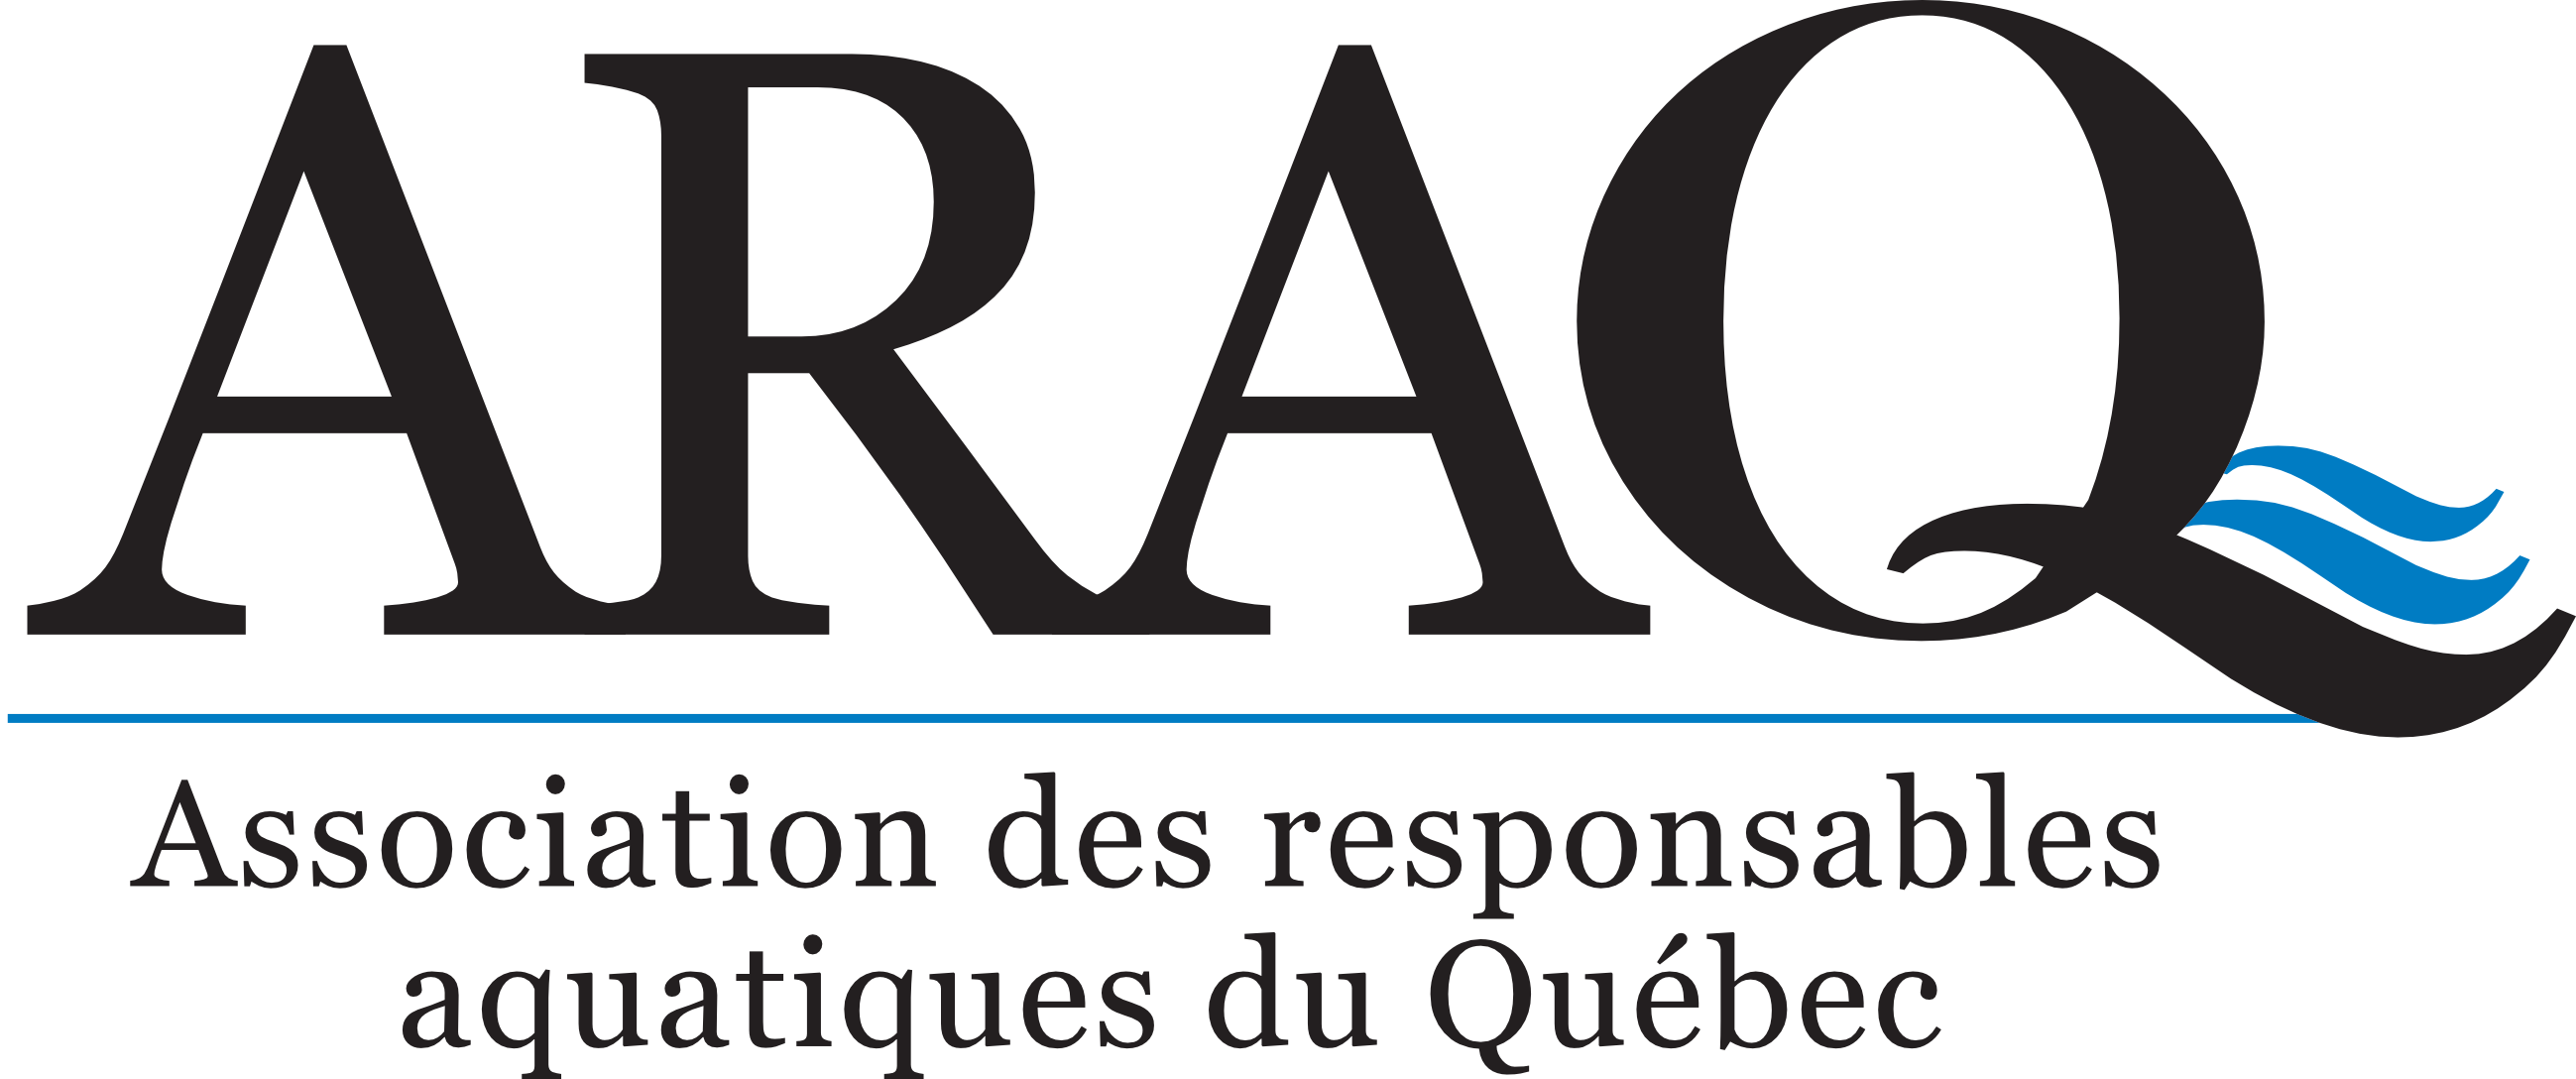 Association des responsables aquatiques du Québec (ARAQ)